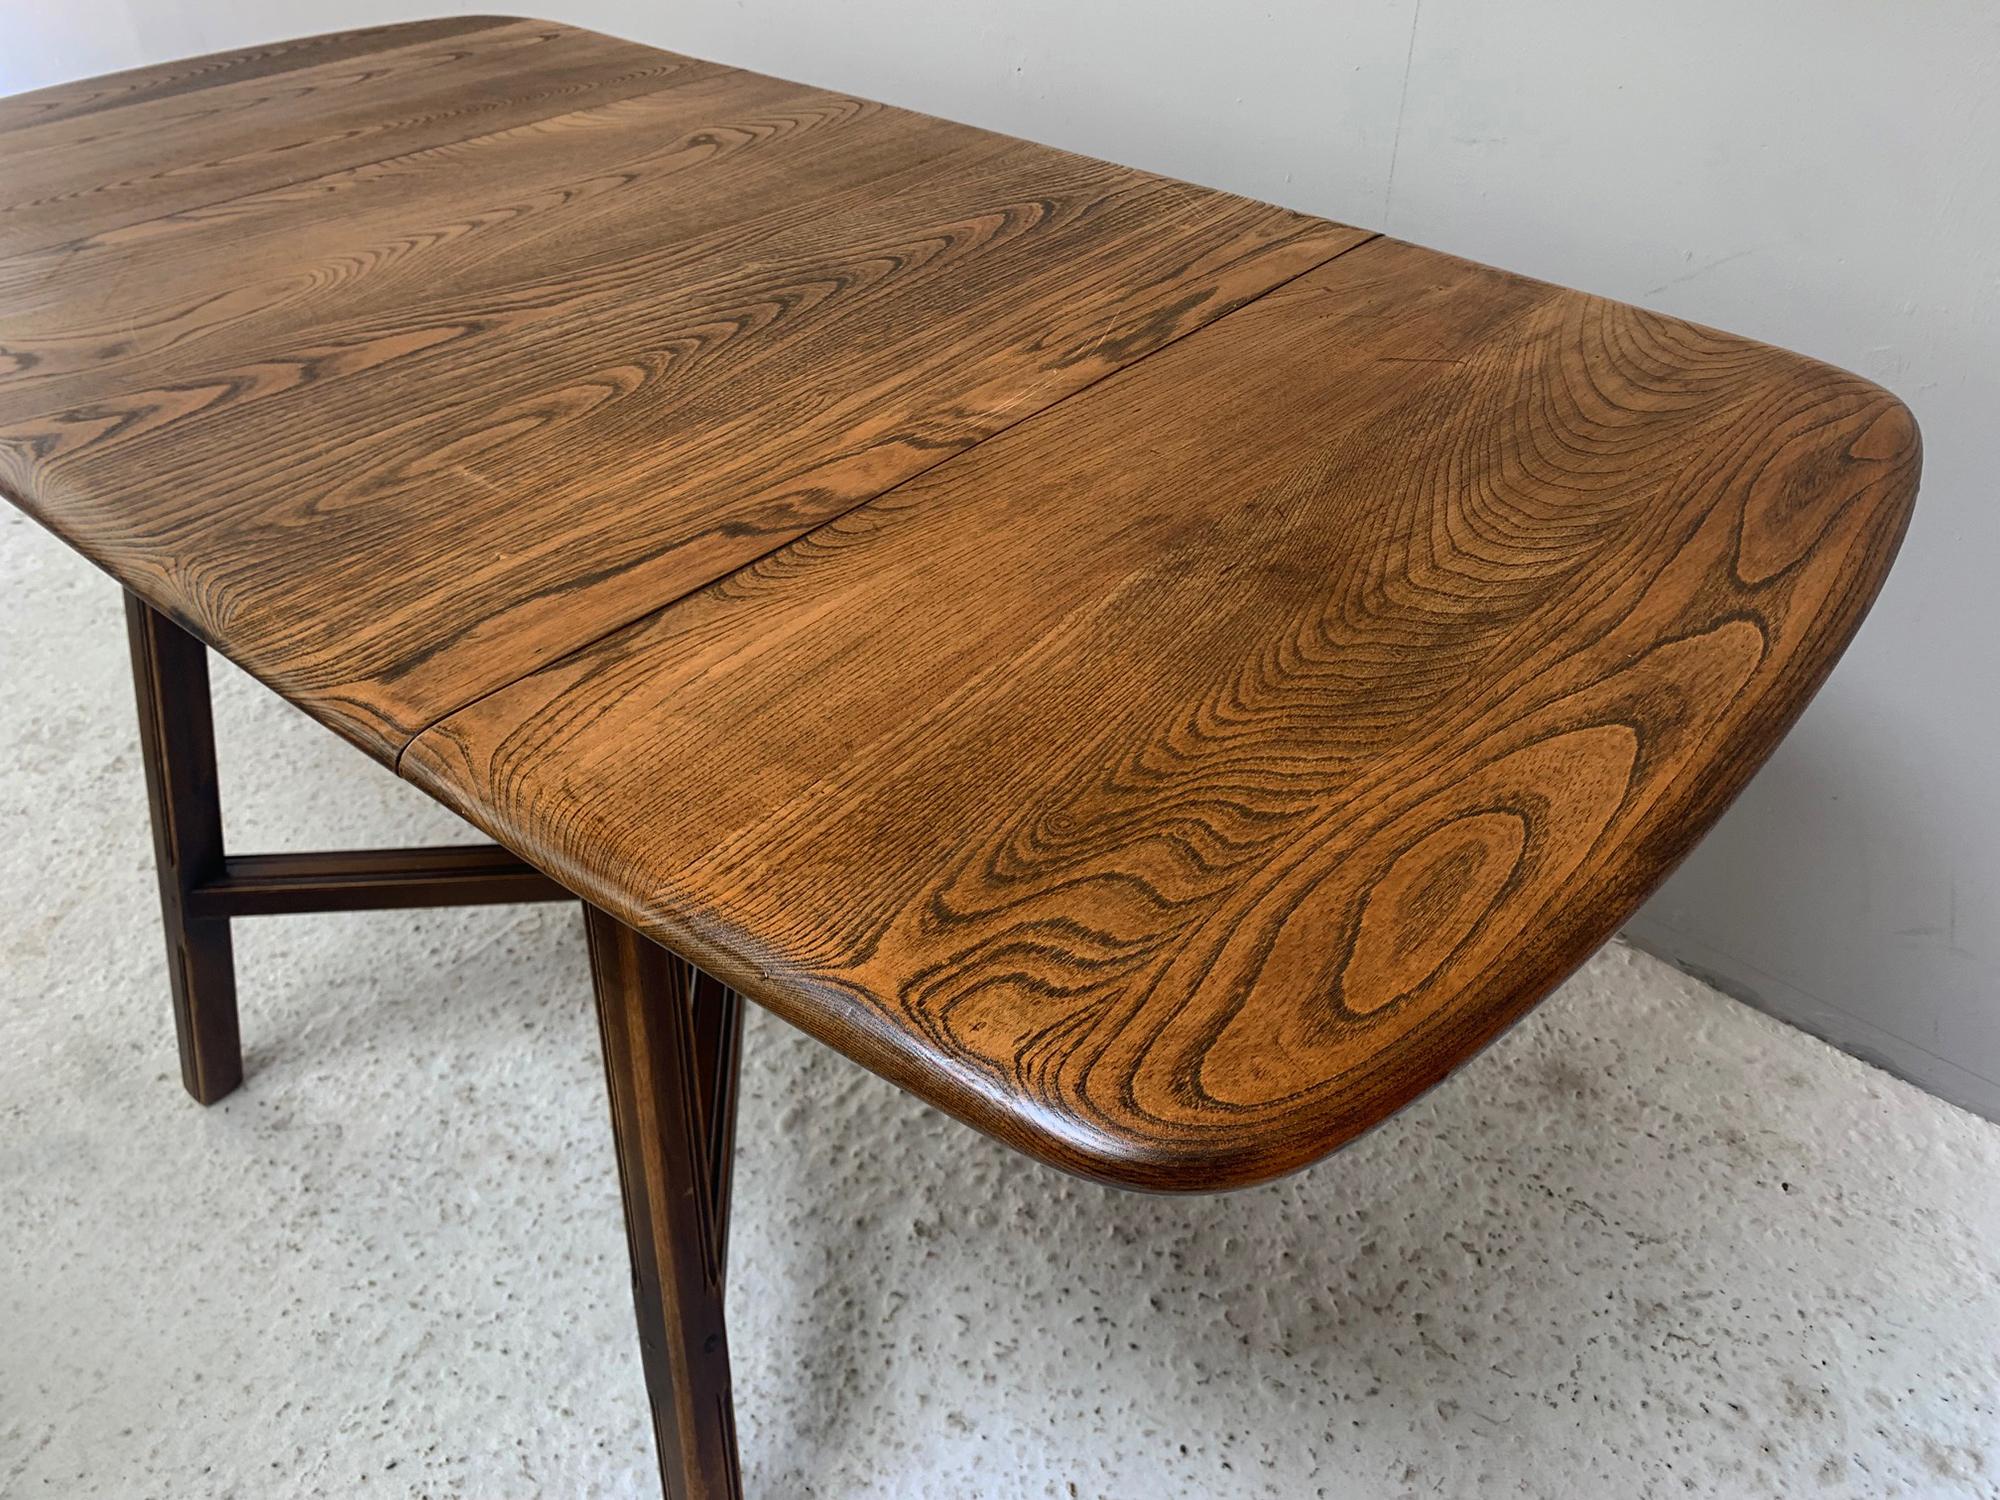 Conçue par Lucian R. Coloni, la table Ercol Old Colonial est un modèle plus ancien et plus rare que les tables Ercol plus récentes. Produit dans les années 1960, il porte l'